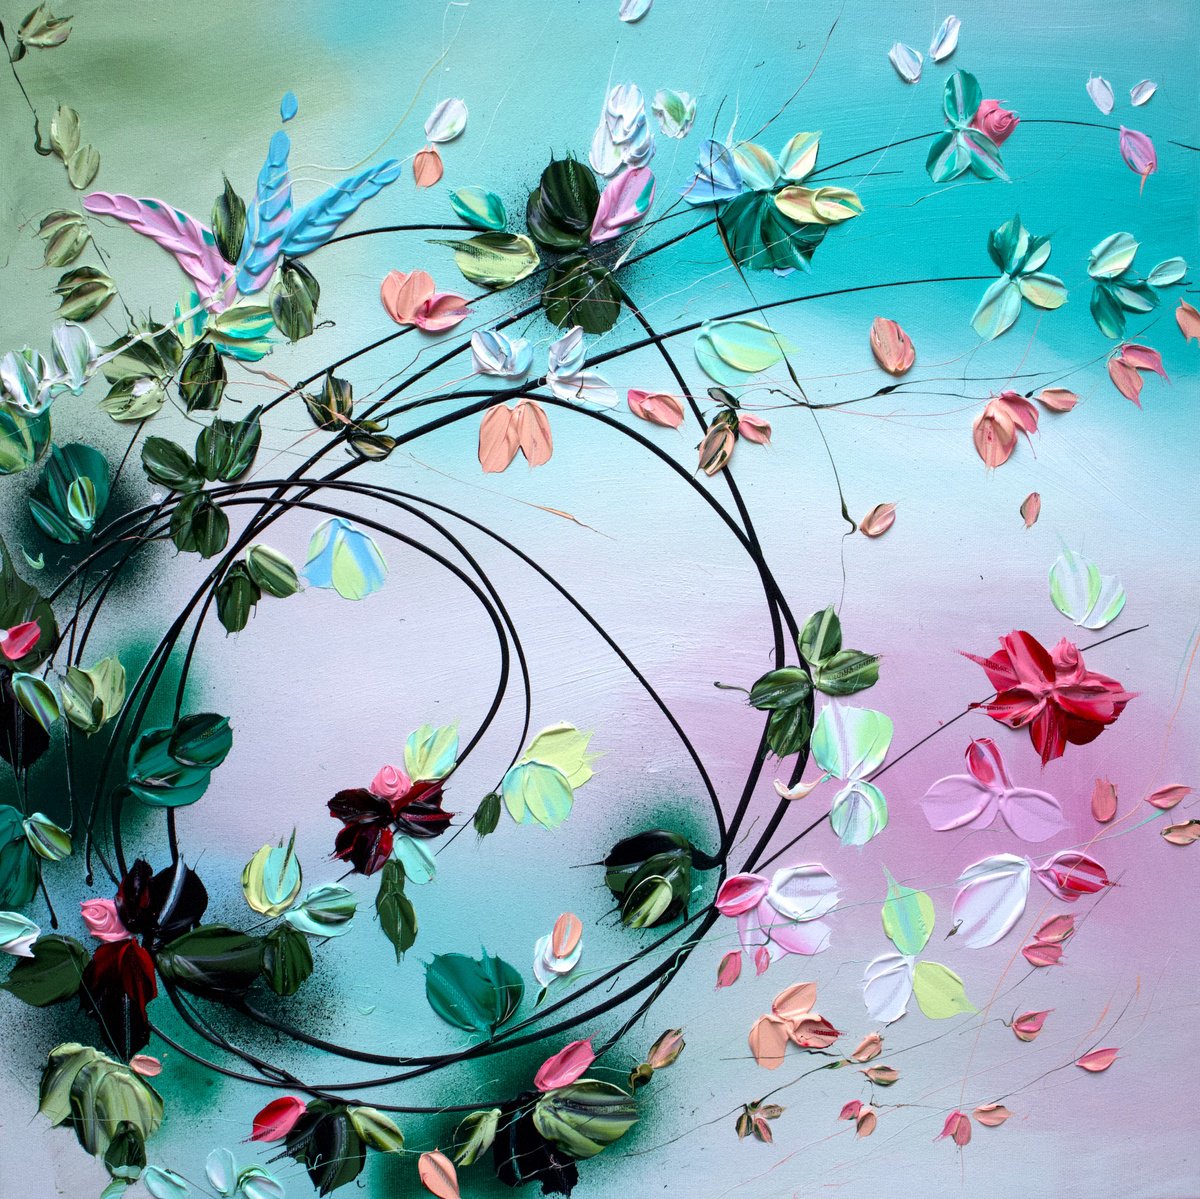 Textured flowers art "Improvisation by Anastassia Skopp